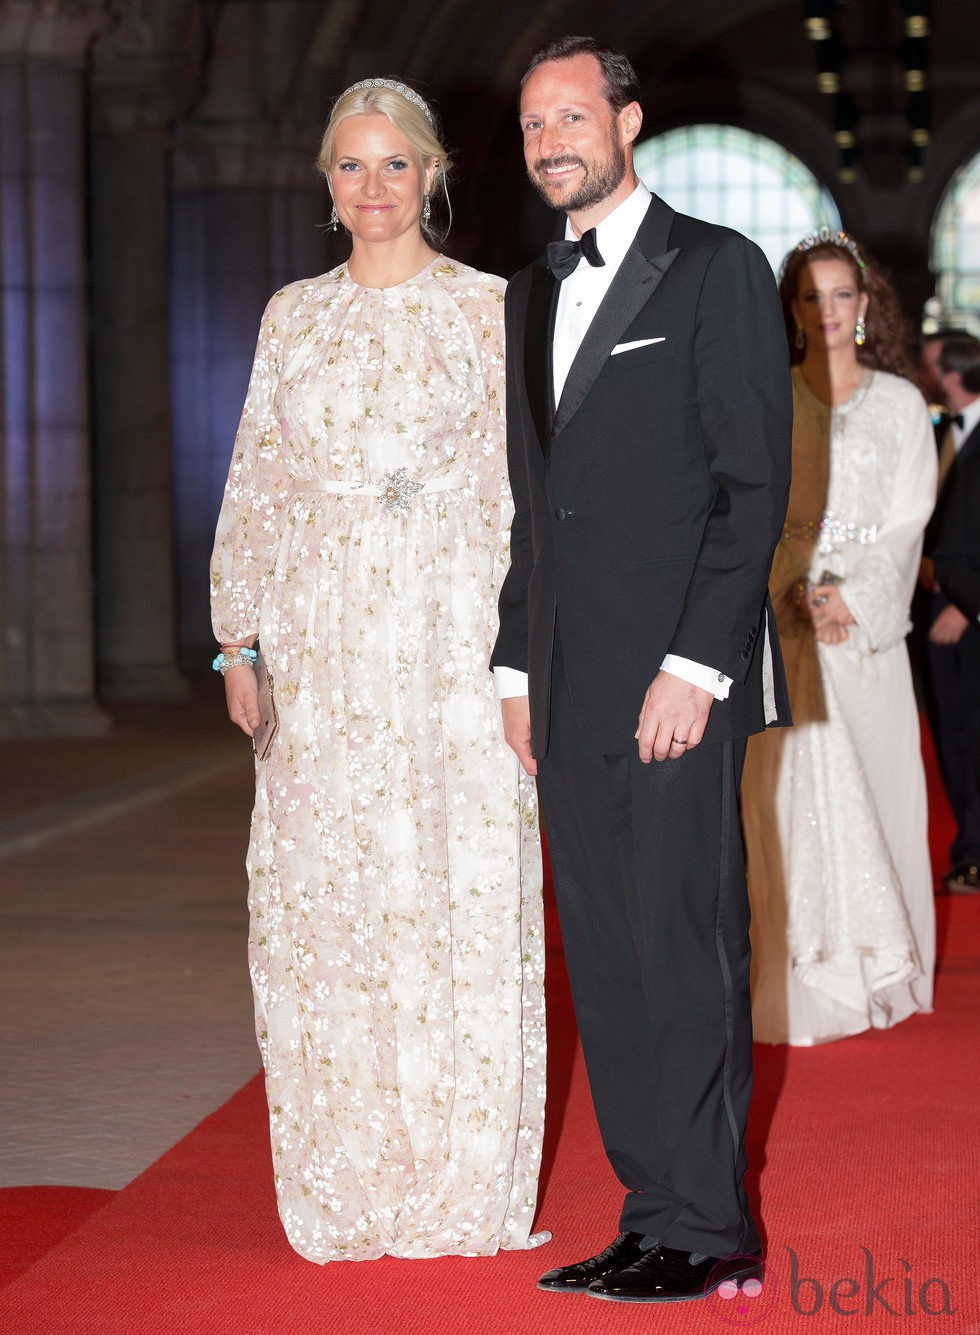 Los príncipes Haakon y Mette-Marit de Noruega en la cena previa a la abdicación de la Reina Beatriz de Holanda